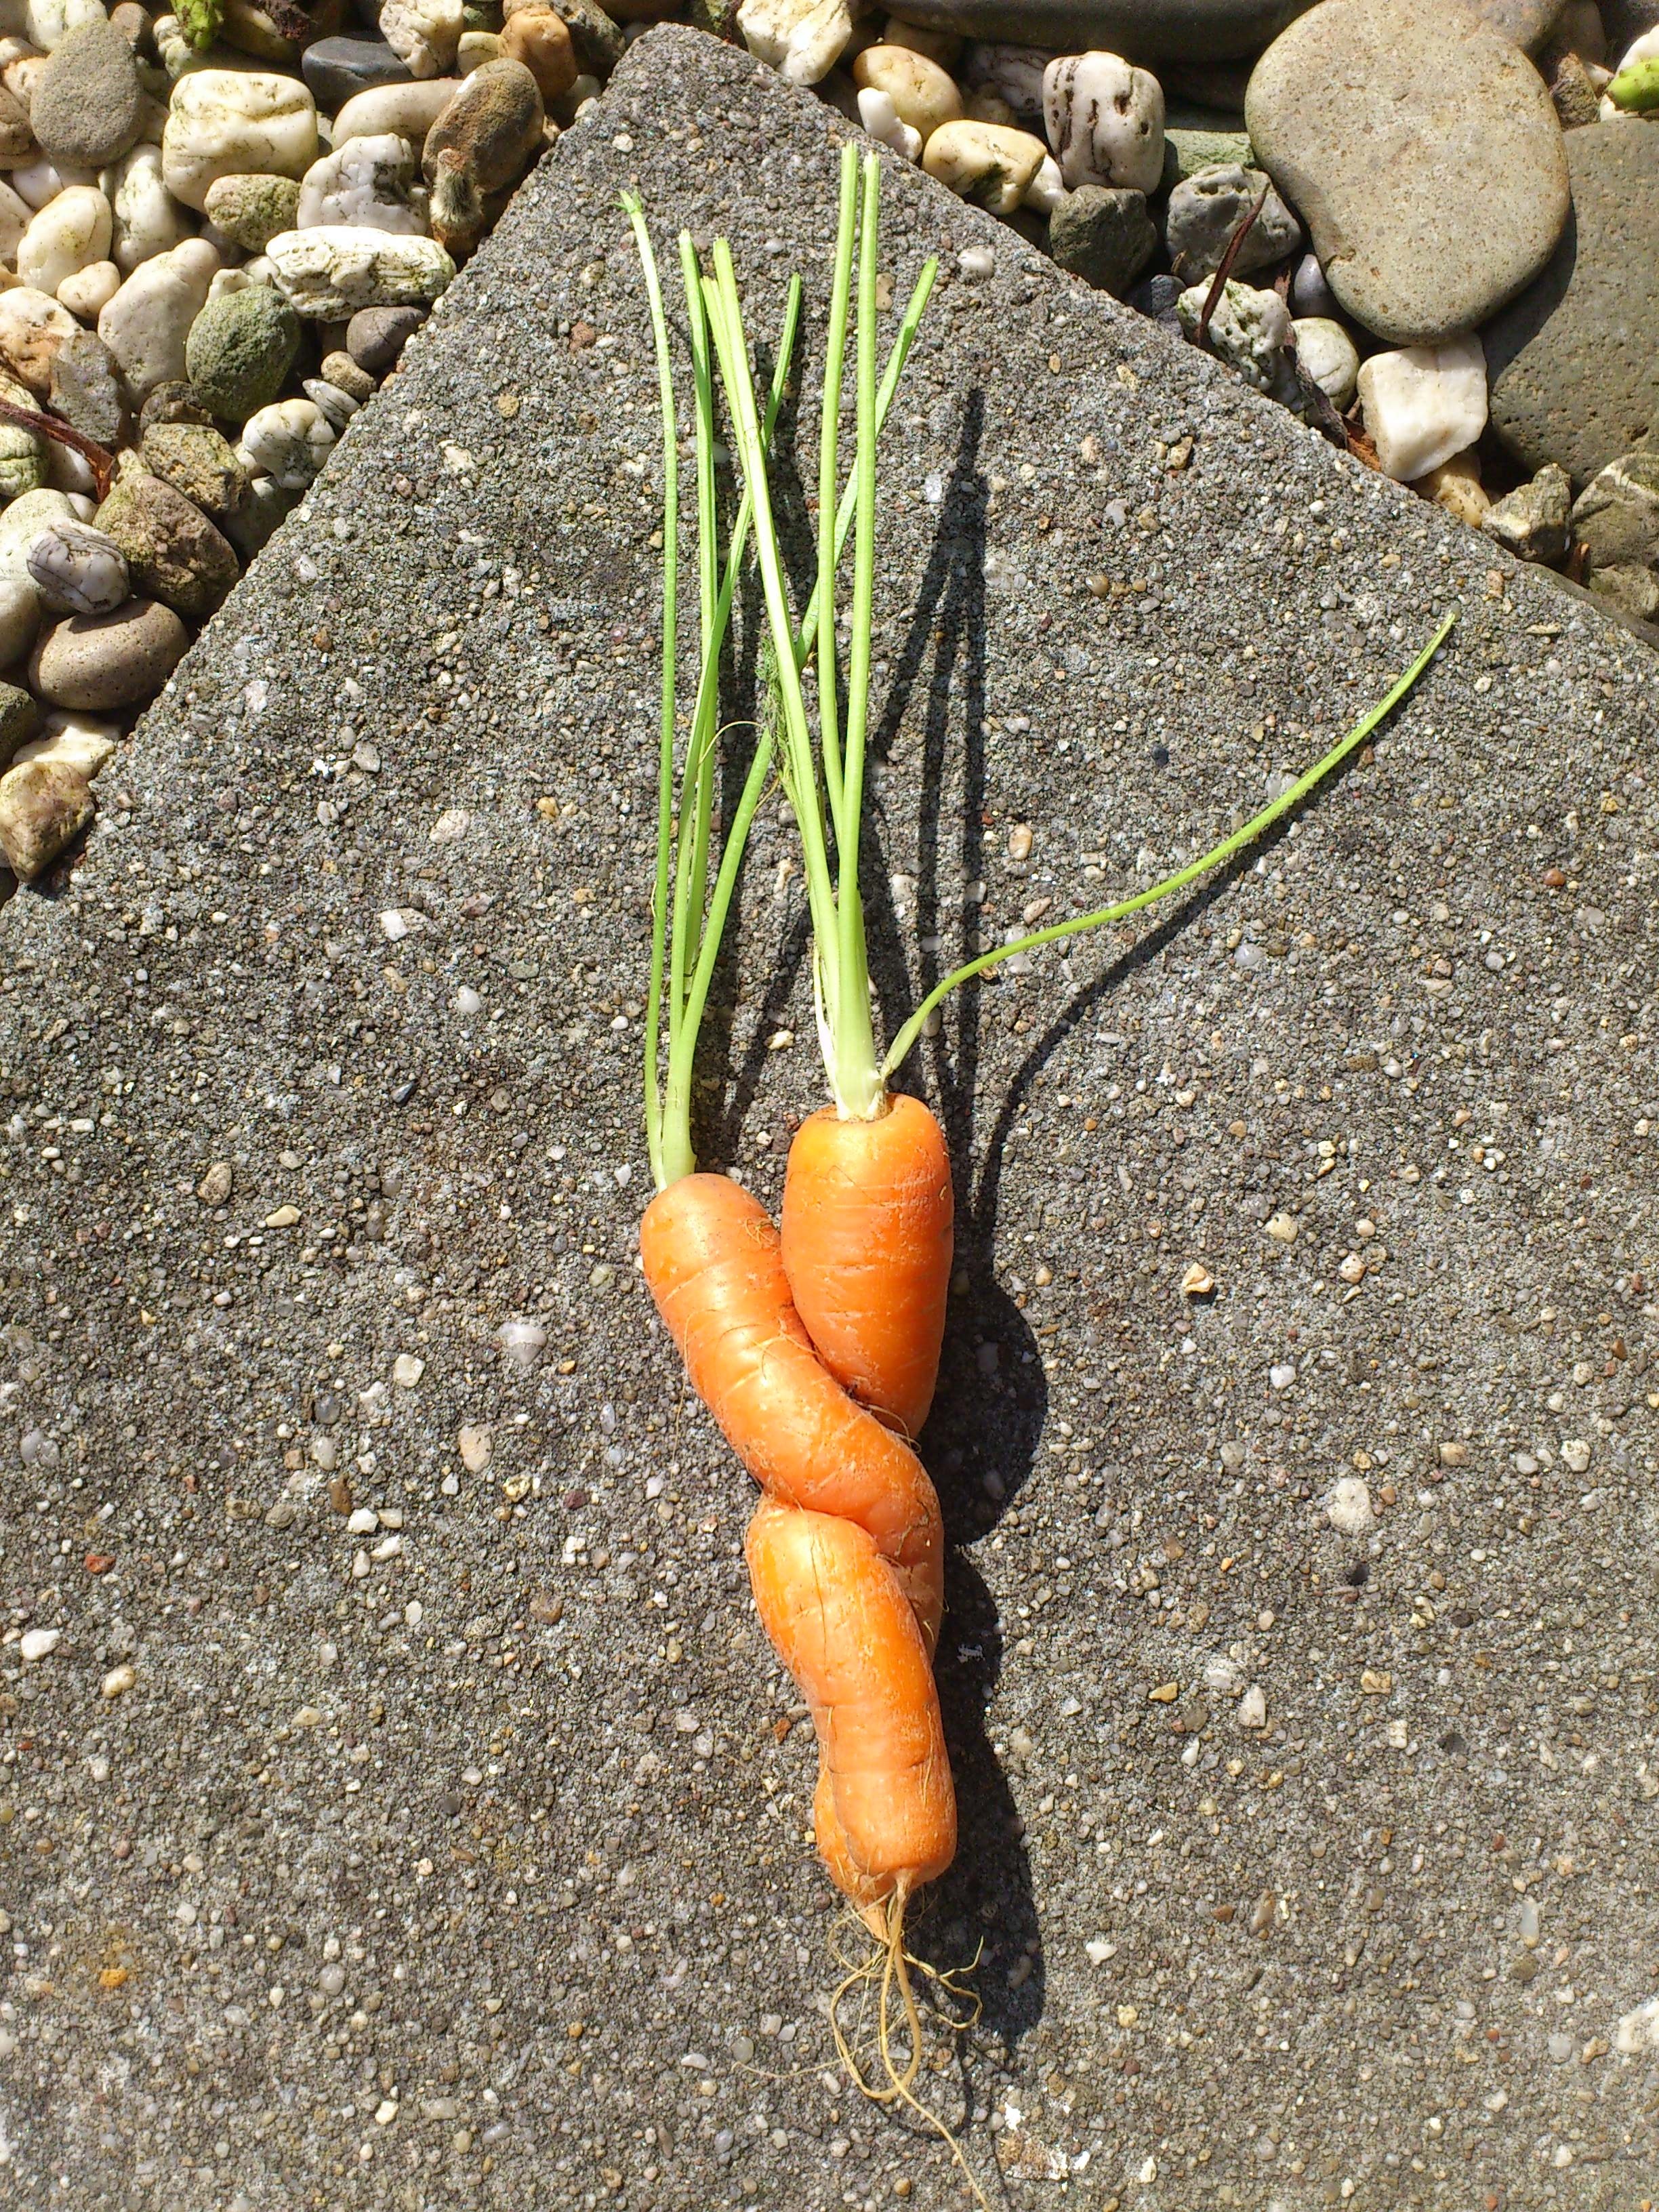 2 orange carrots